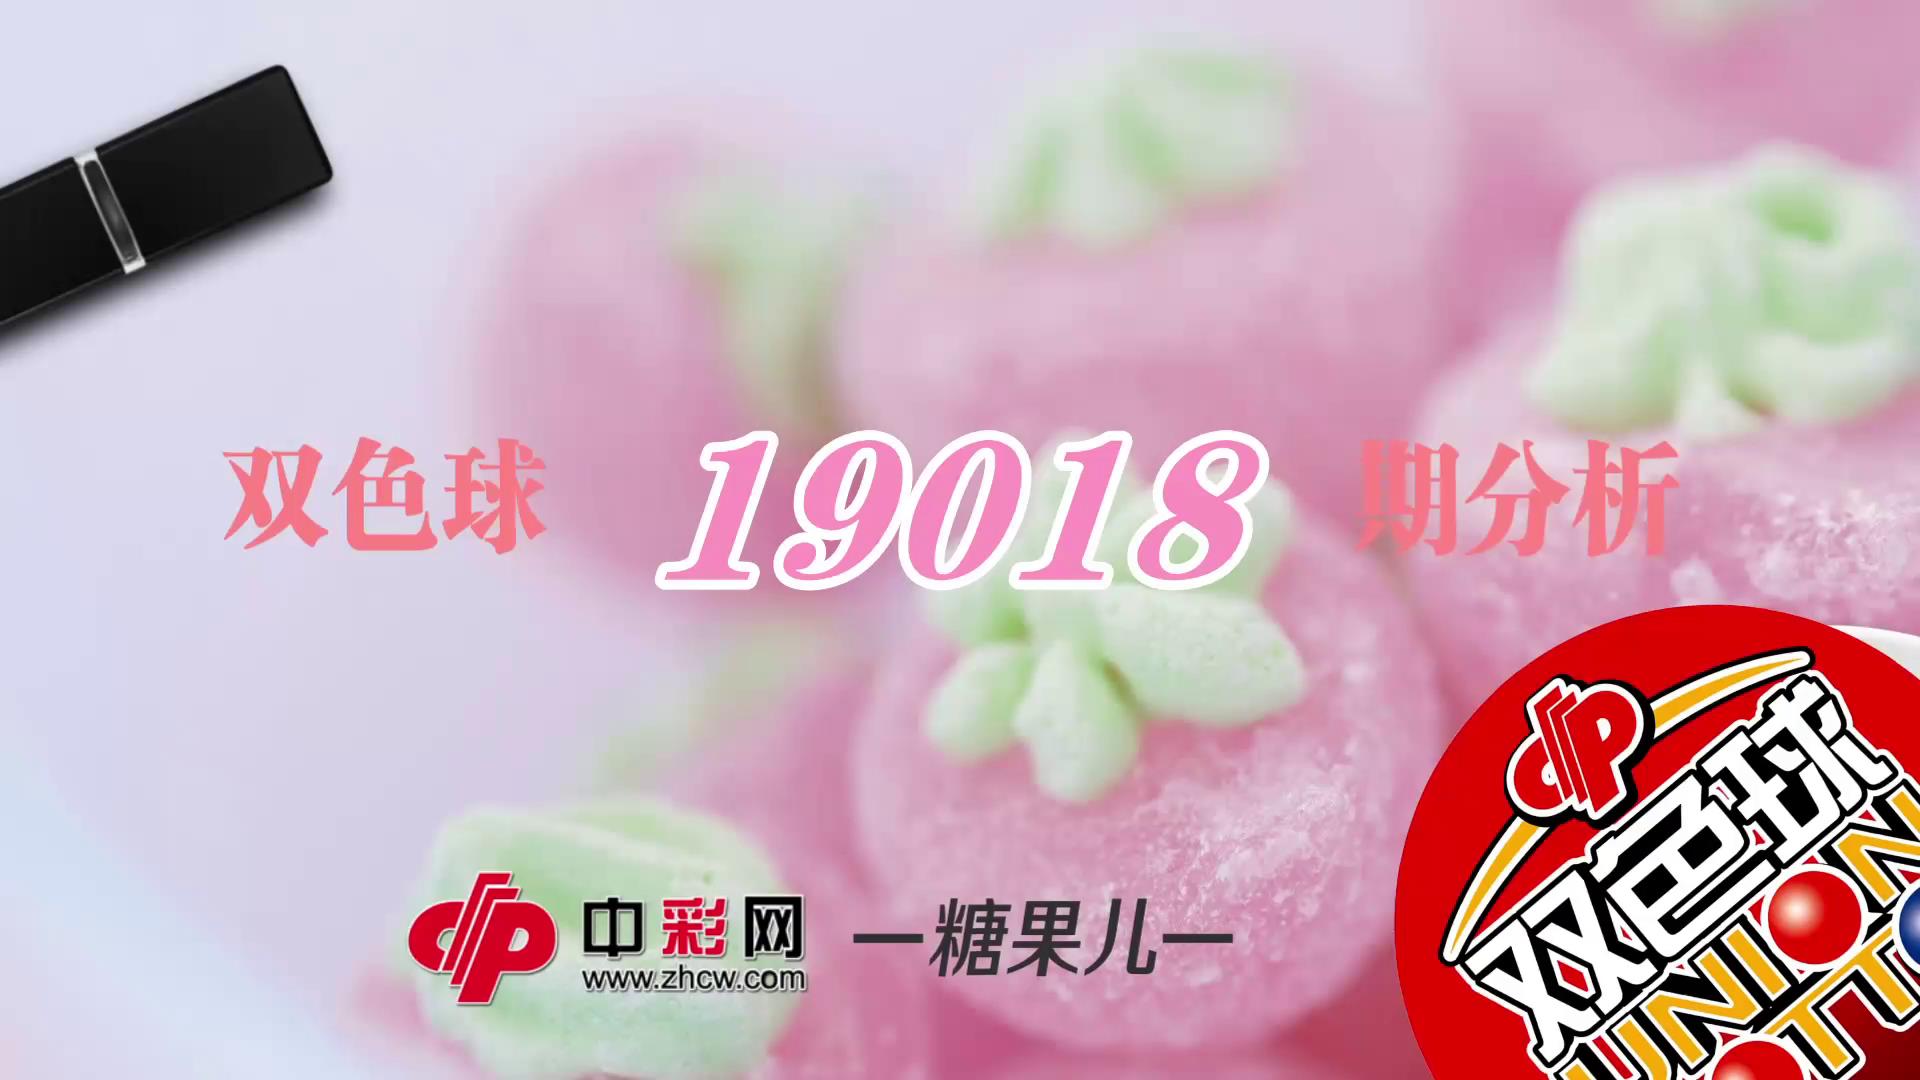 【中彩视频】糖果儿双色球第19018期